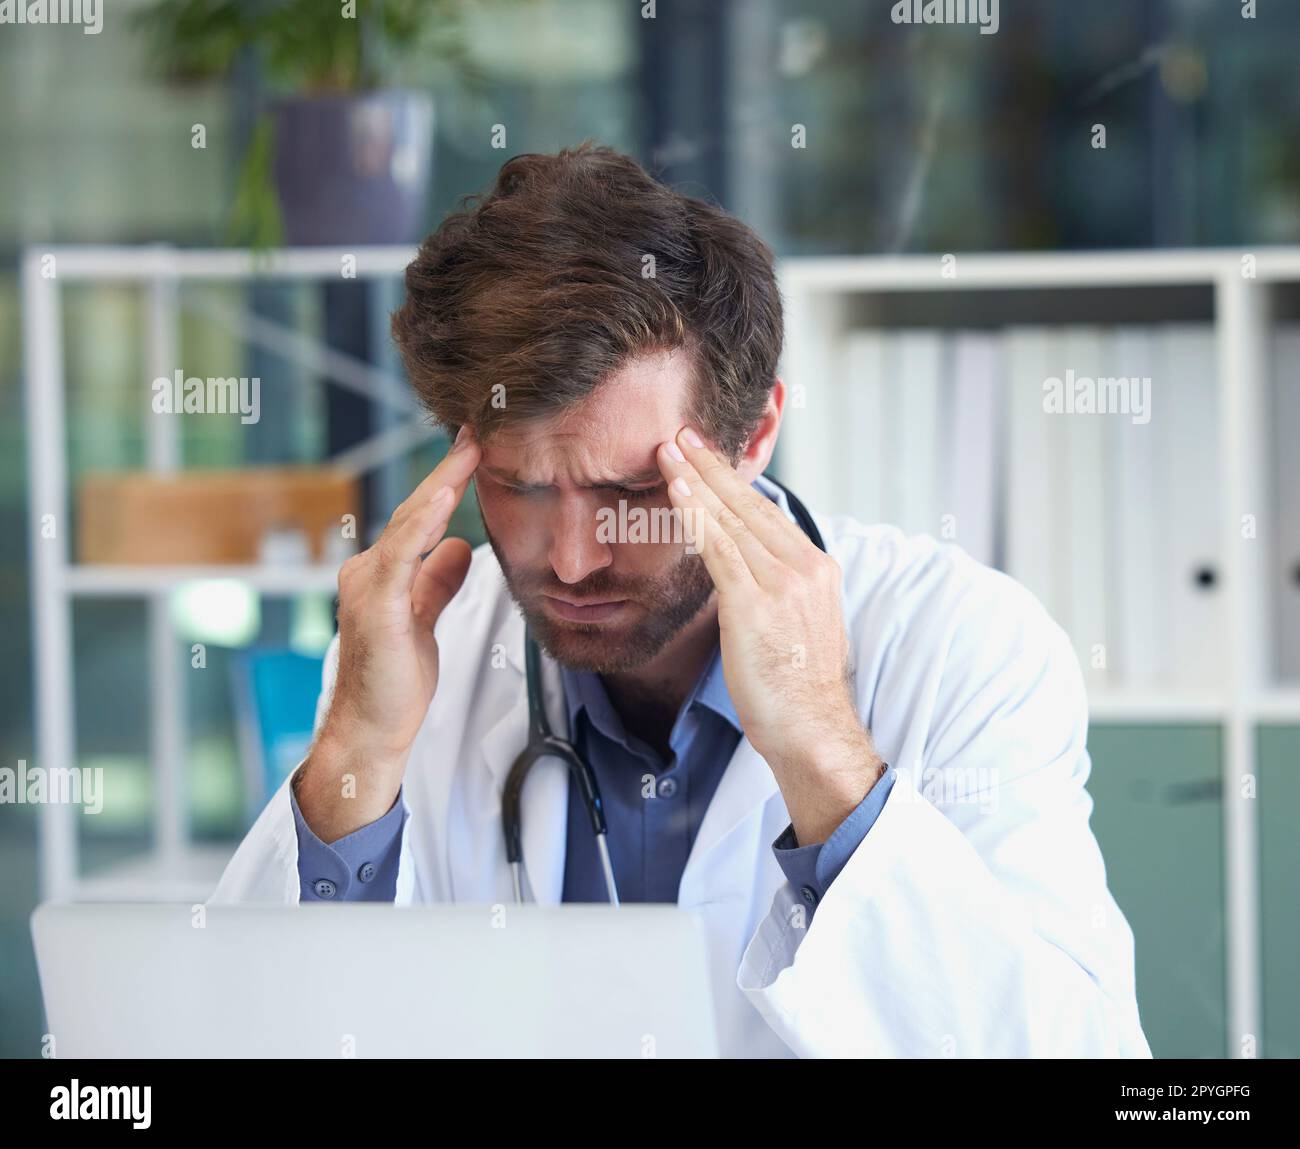 Kopfschmerzen, Burnout oder Arzt mit Stress in einem Krankenhaus denkt an Notfall, medizinische Deadline oder Druck. Migräne, Mensch oder medizinisches Fachpersonal frustriert mit psychischen Problemen oder Arbeitsangst Stockfoto